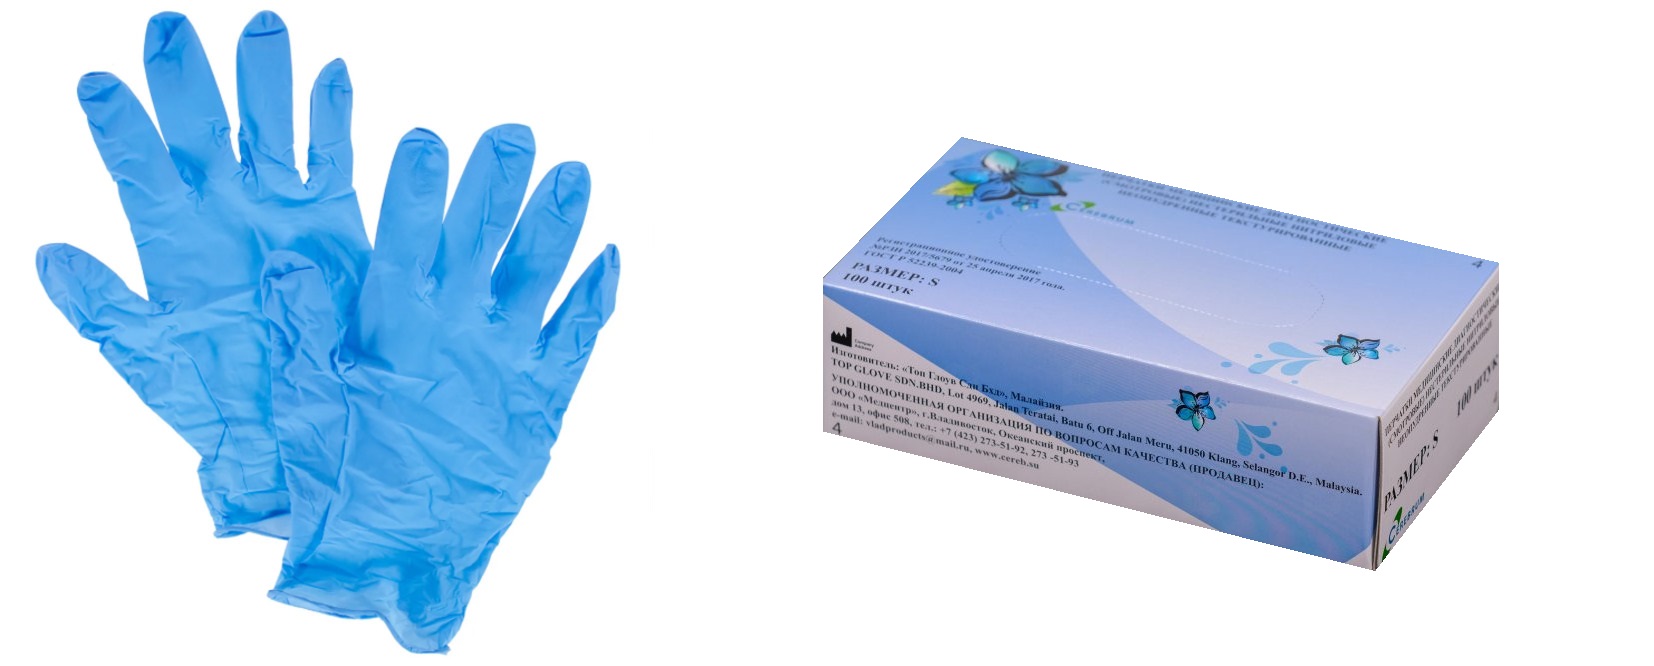 Перчатки медицинские диагностические (смотровые) нестерильные нитриловые неопудренные текстурированные. Размер L. Голубого цвета.